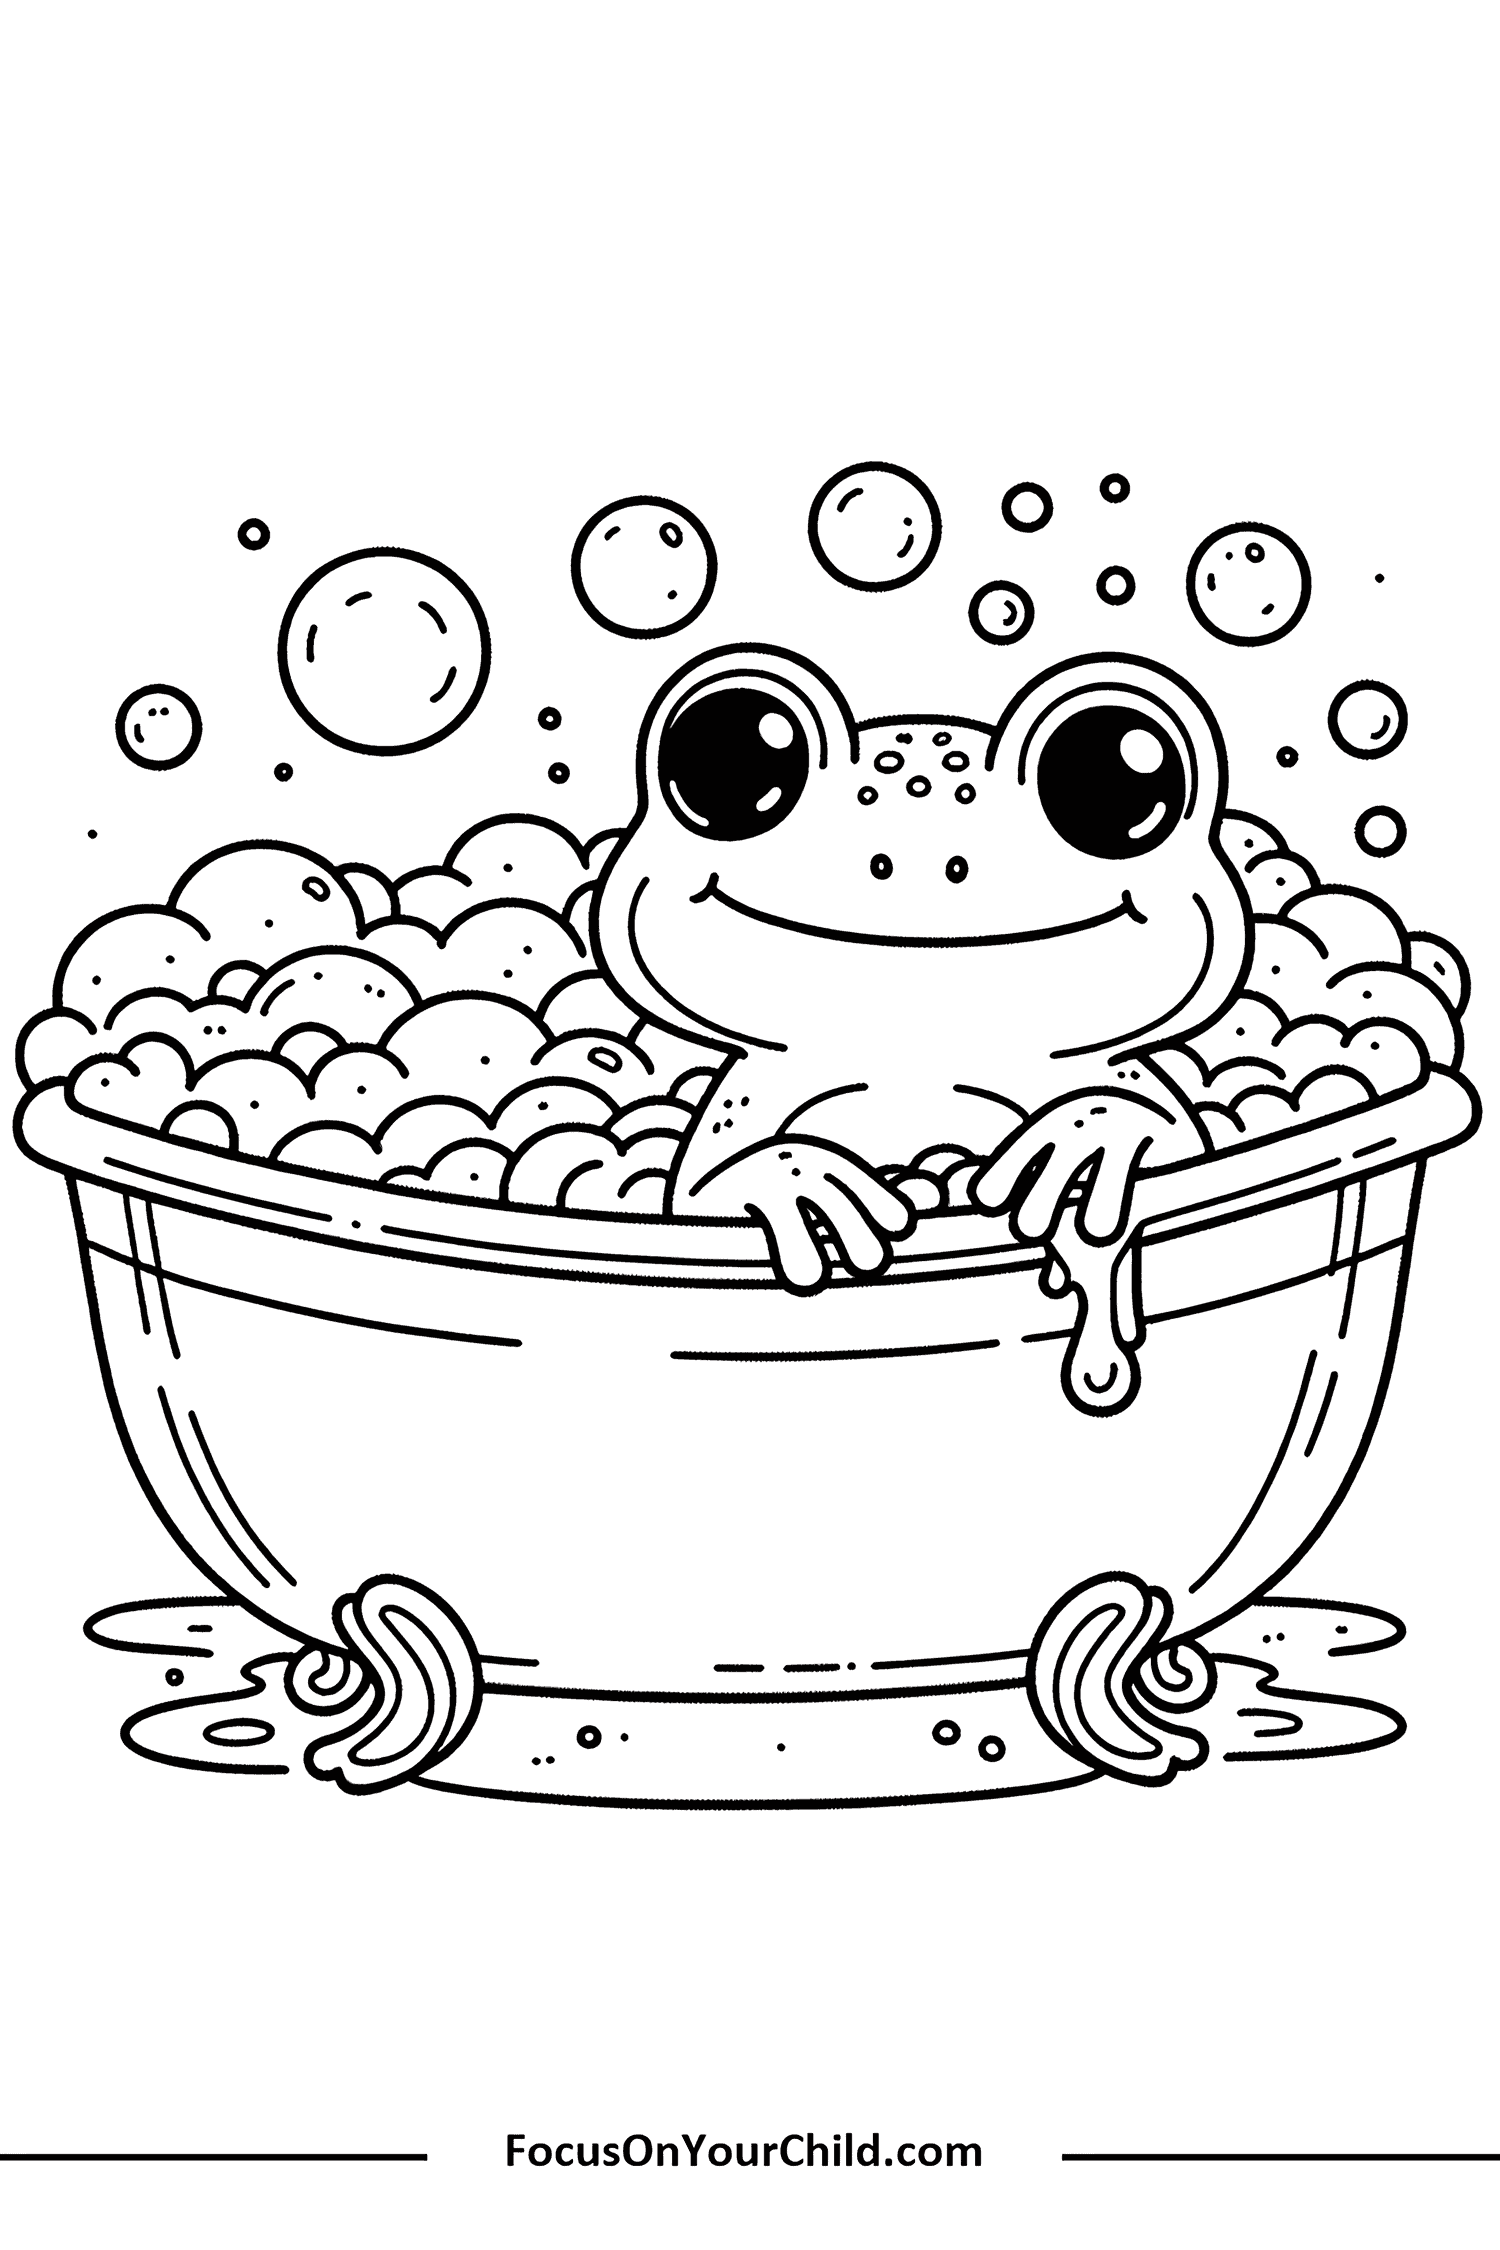 Cheerful frog enjoying a bubbly bath in a round tub.